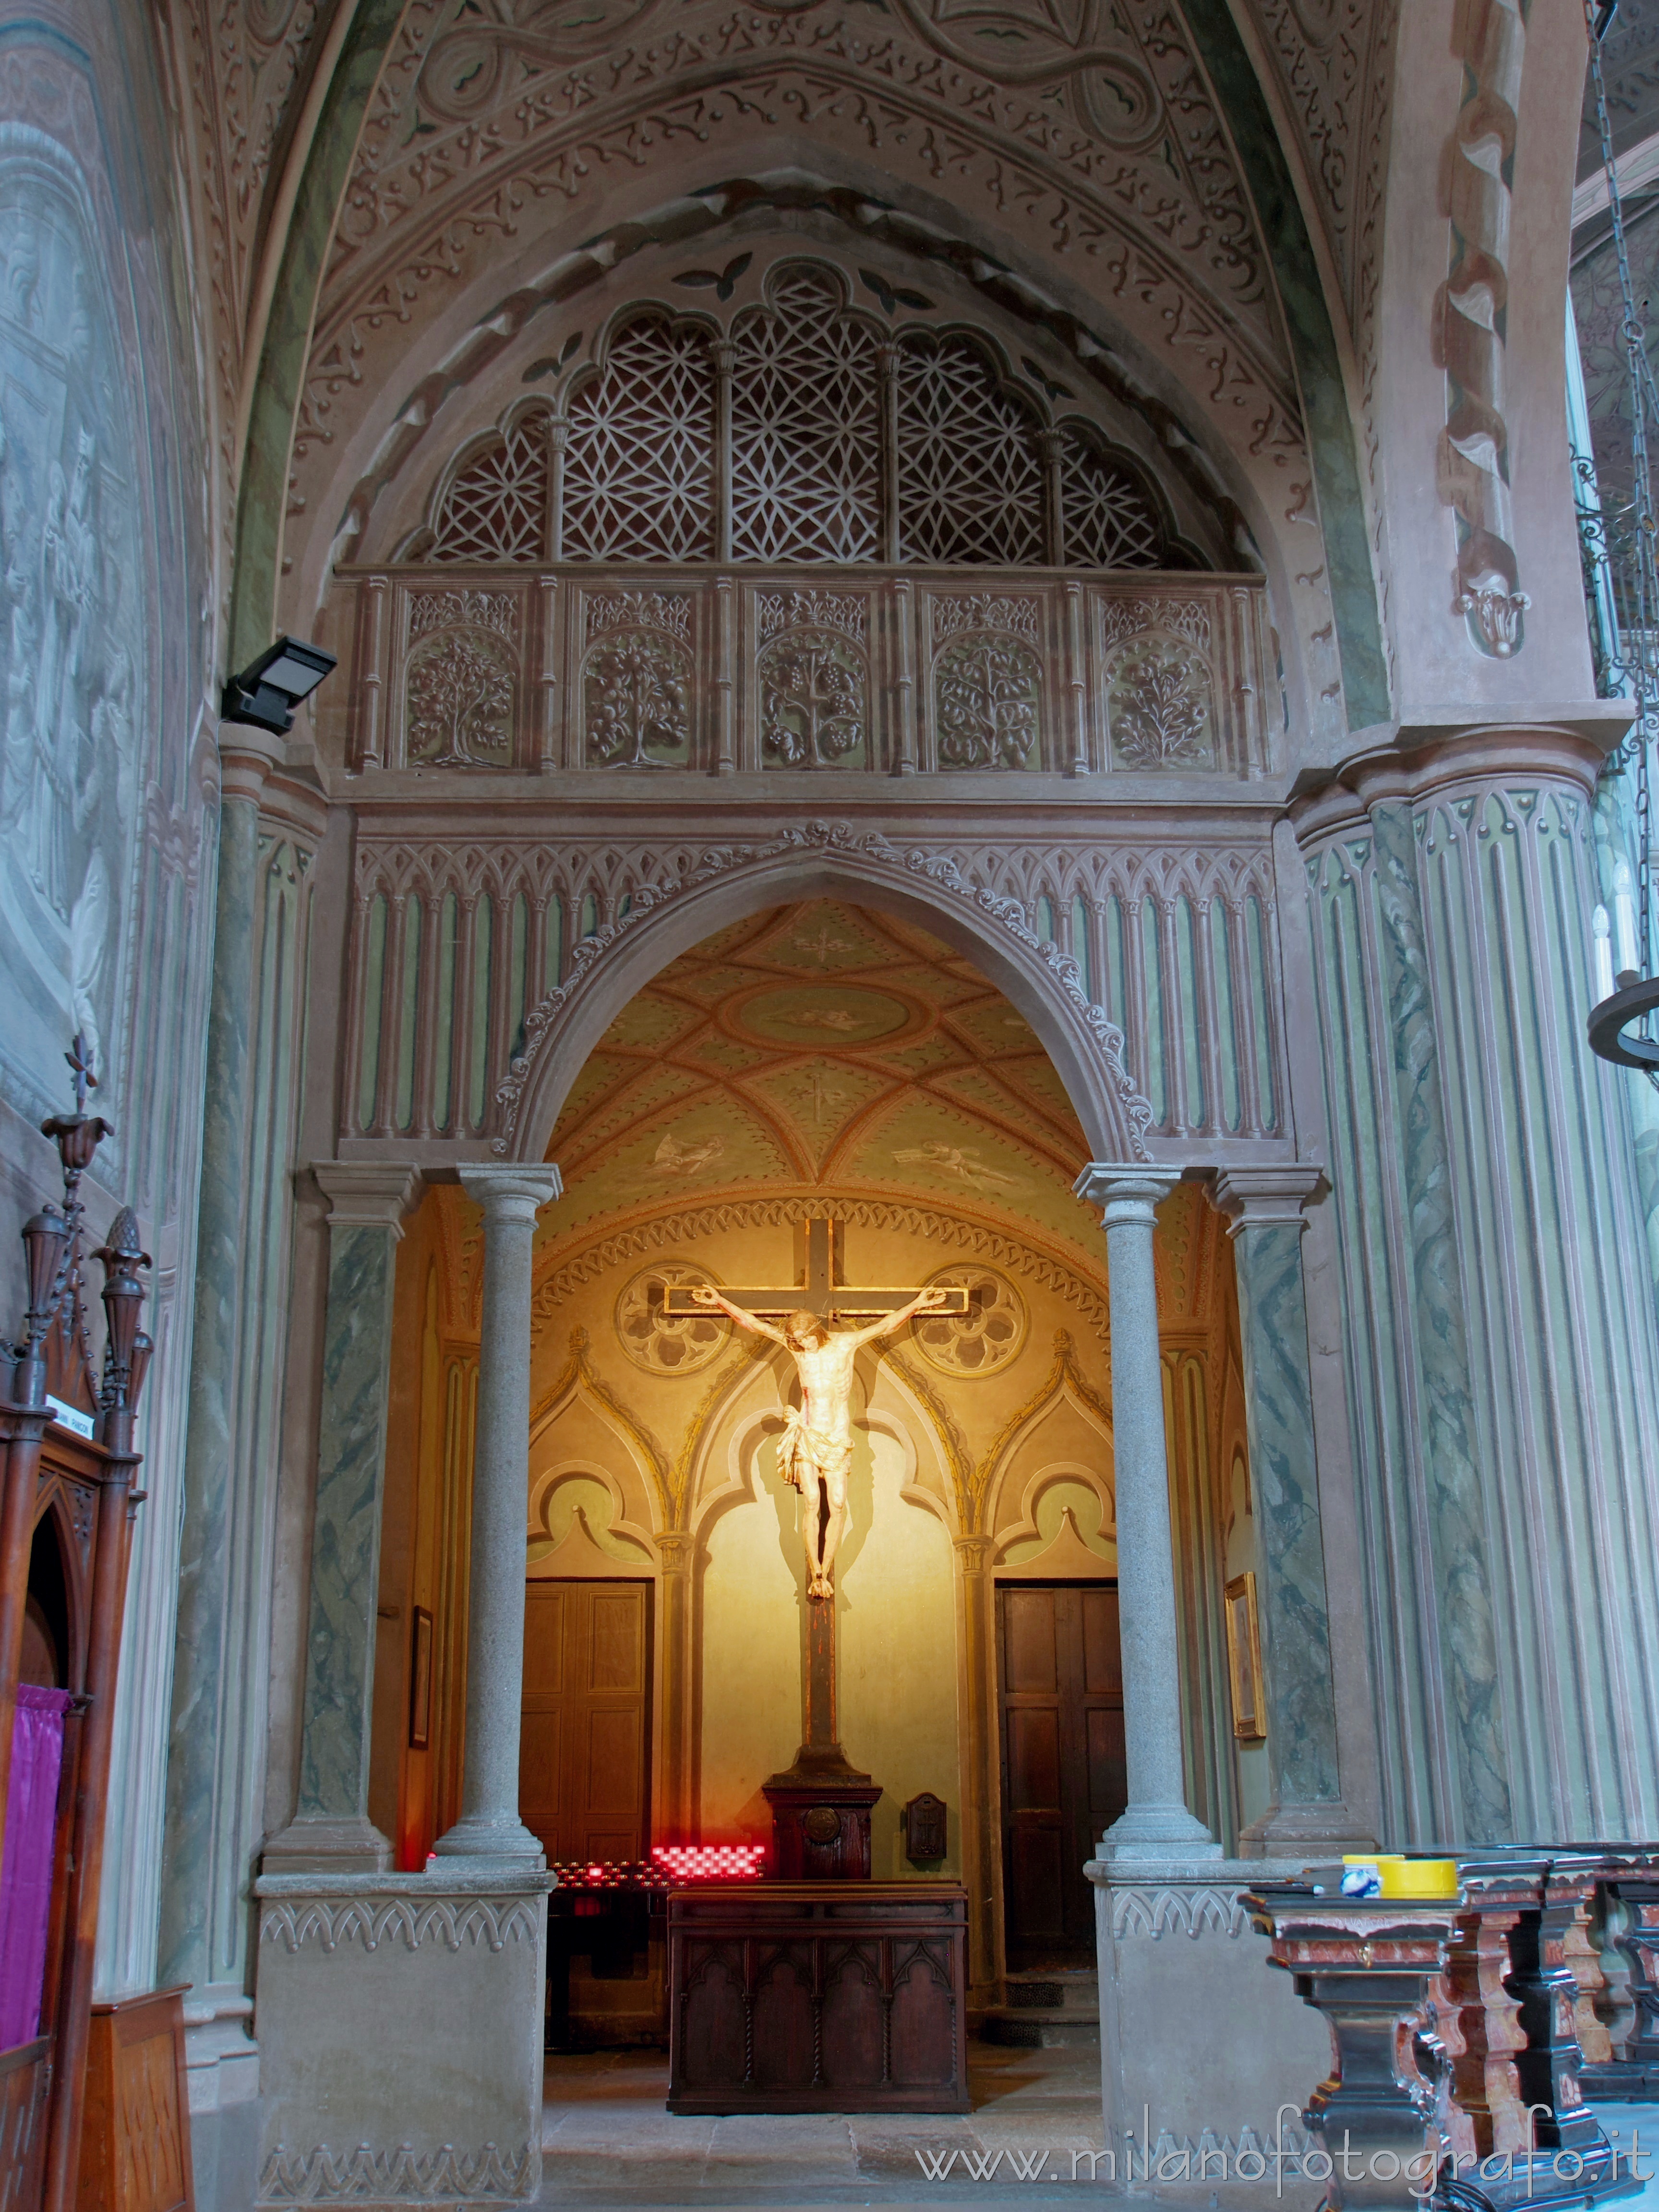 Biella (Italy): Chapel of the crucifix in the Cathedral of Biella - Biella (Italy)